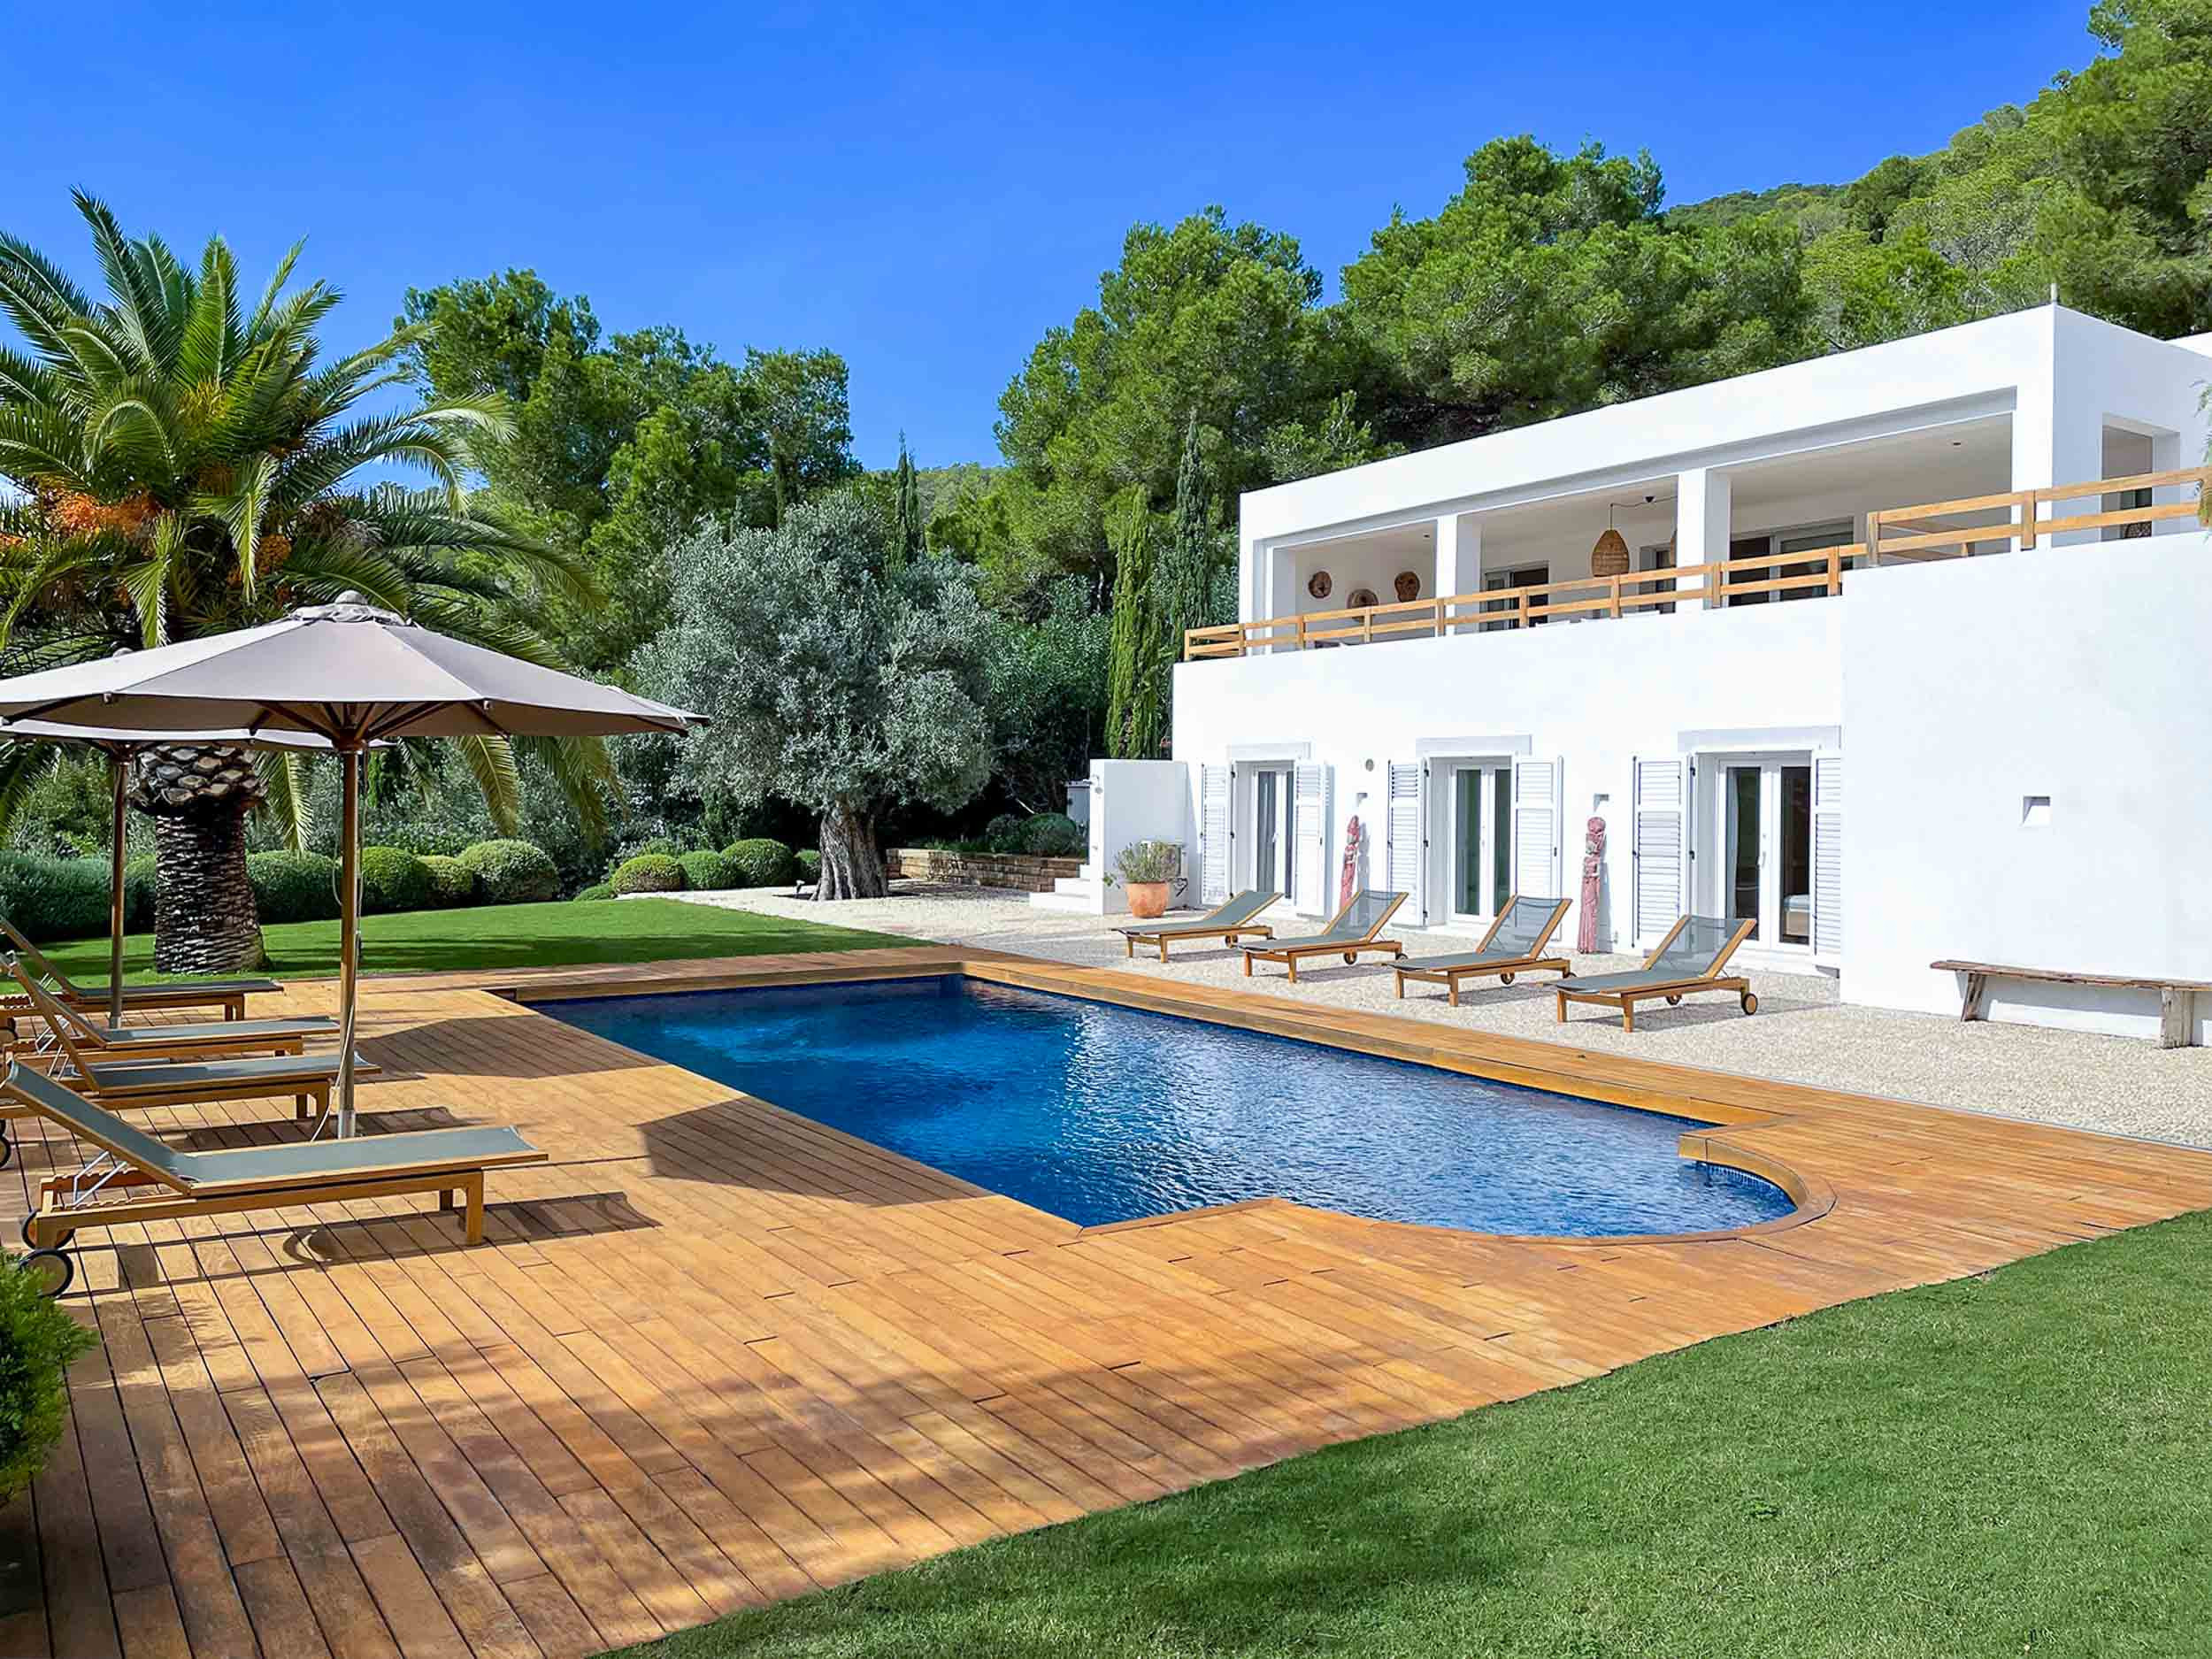 Amantiga-Villa auf Ibiza mit Pool und Garten